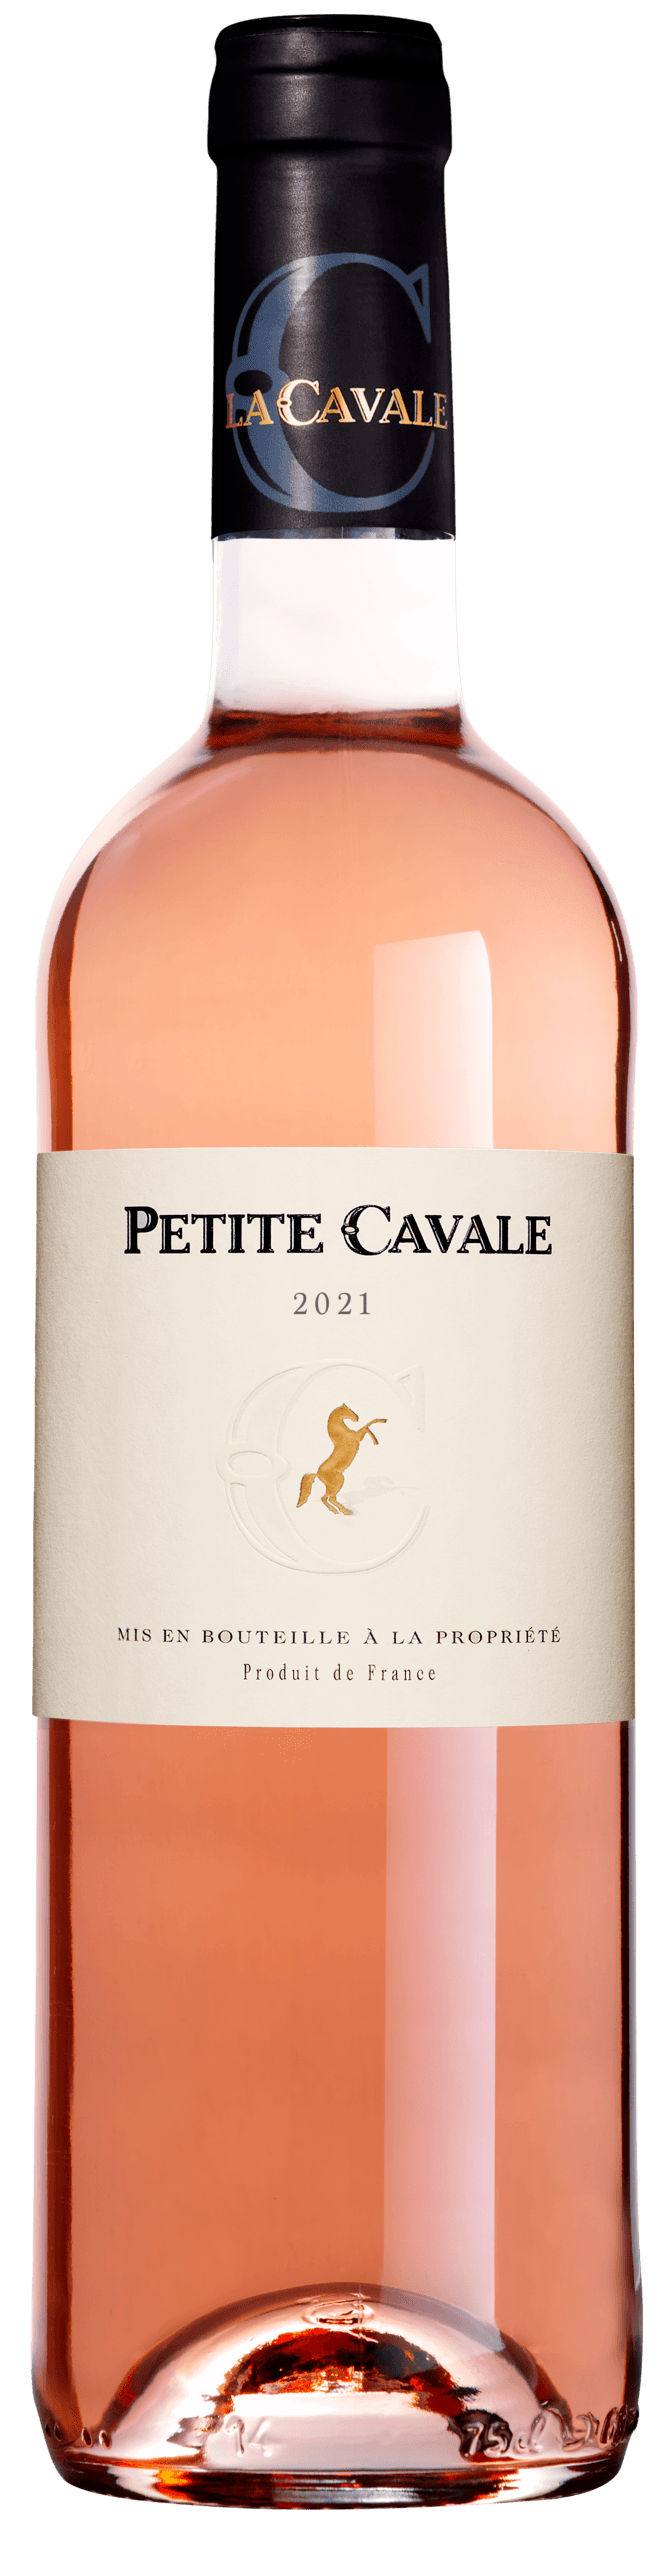 Petite Cavale rosé 2021 - Domaine La Cavale